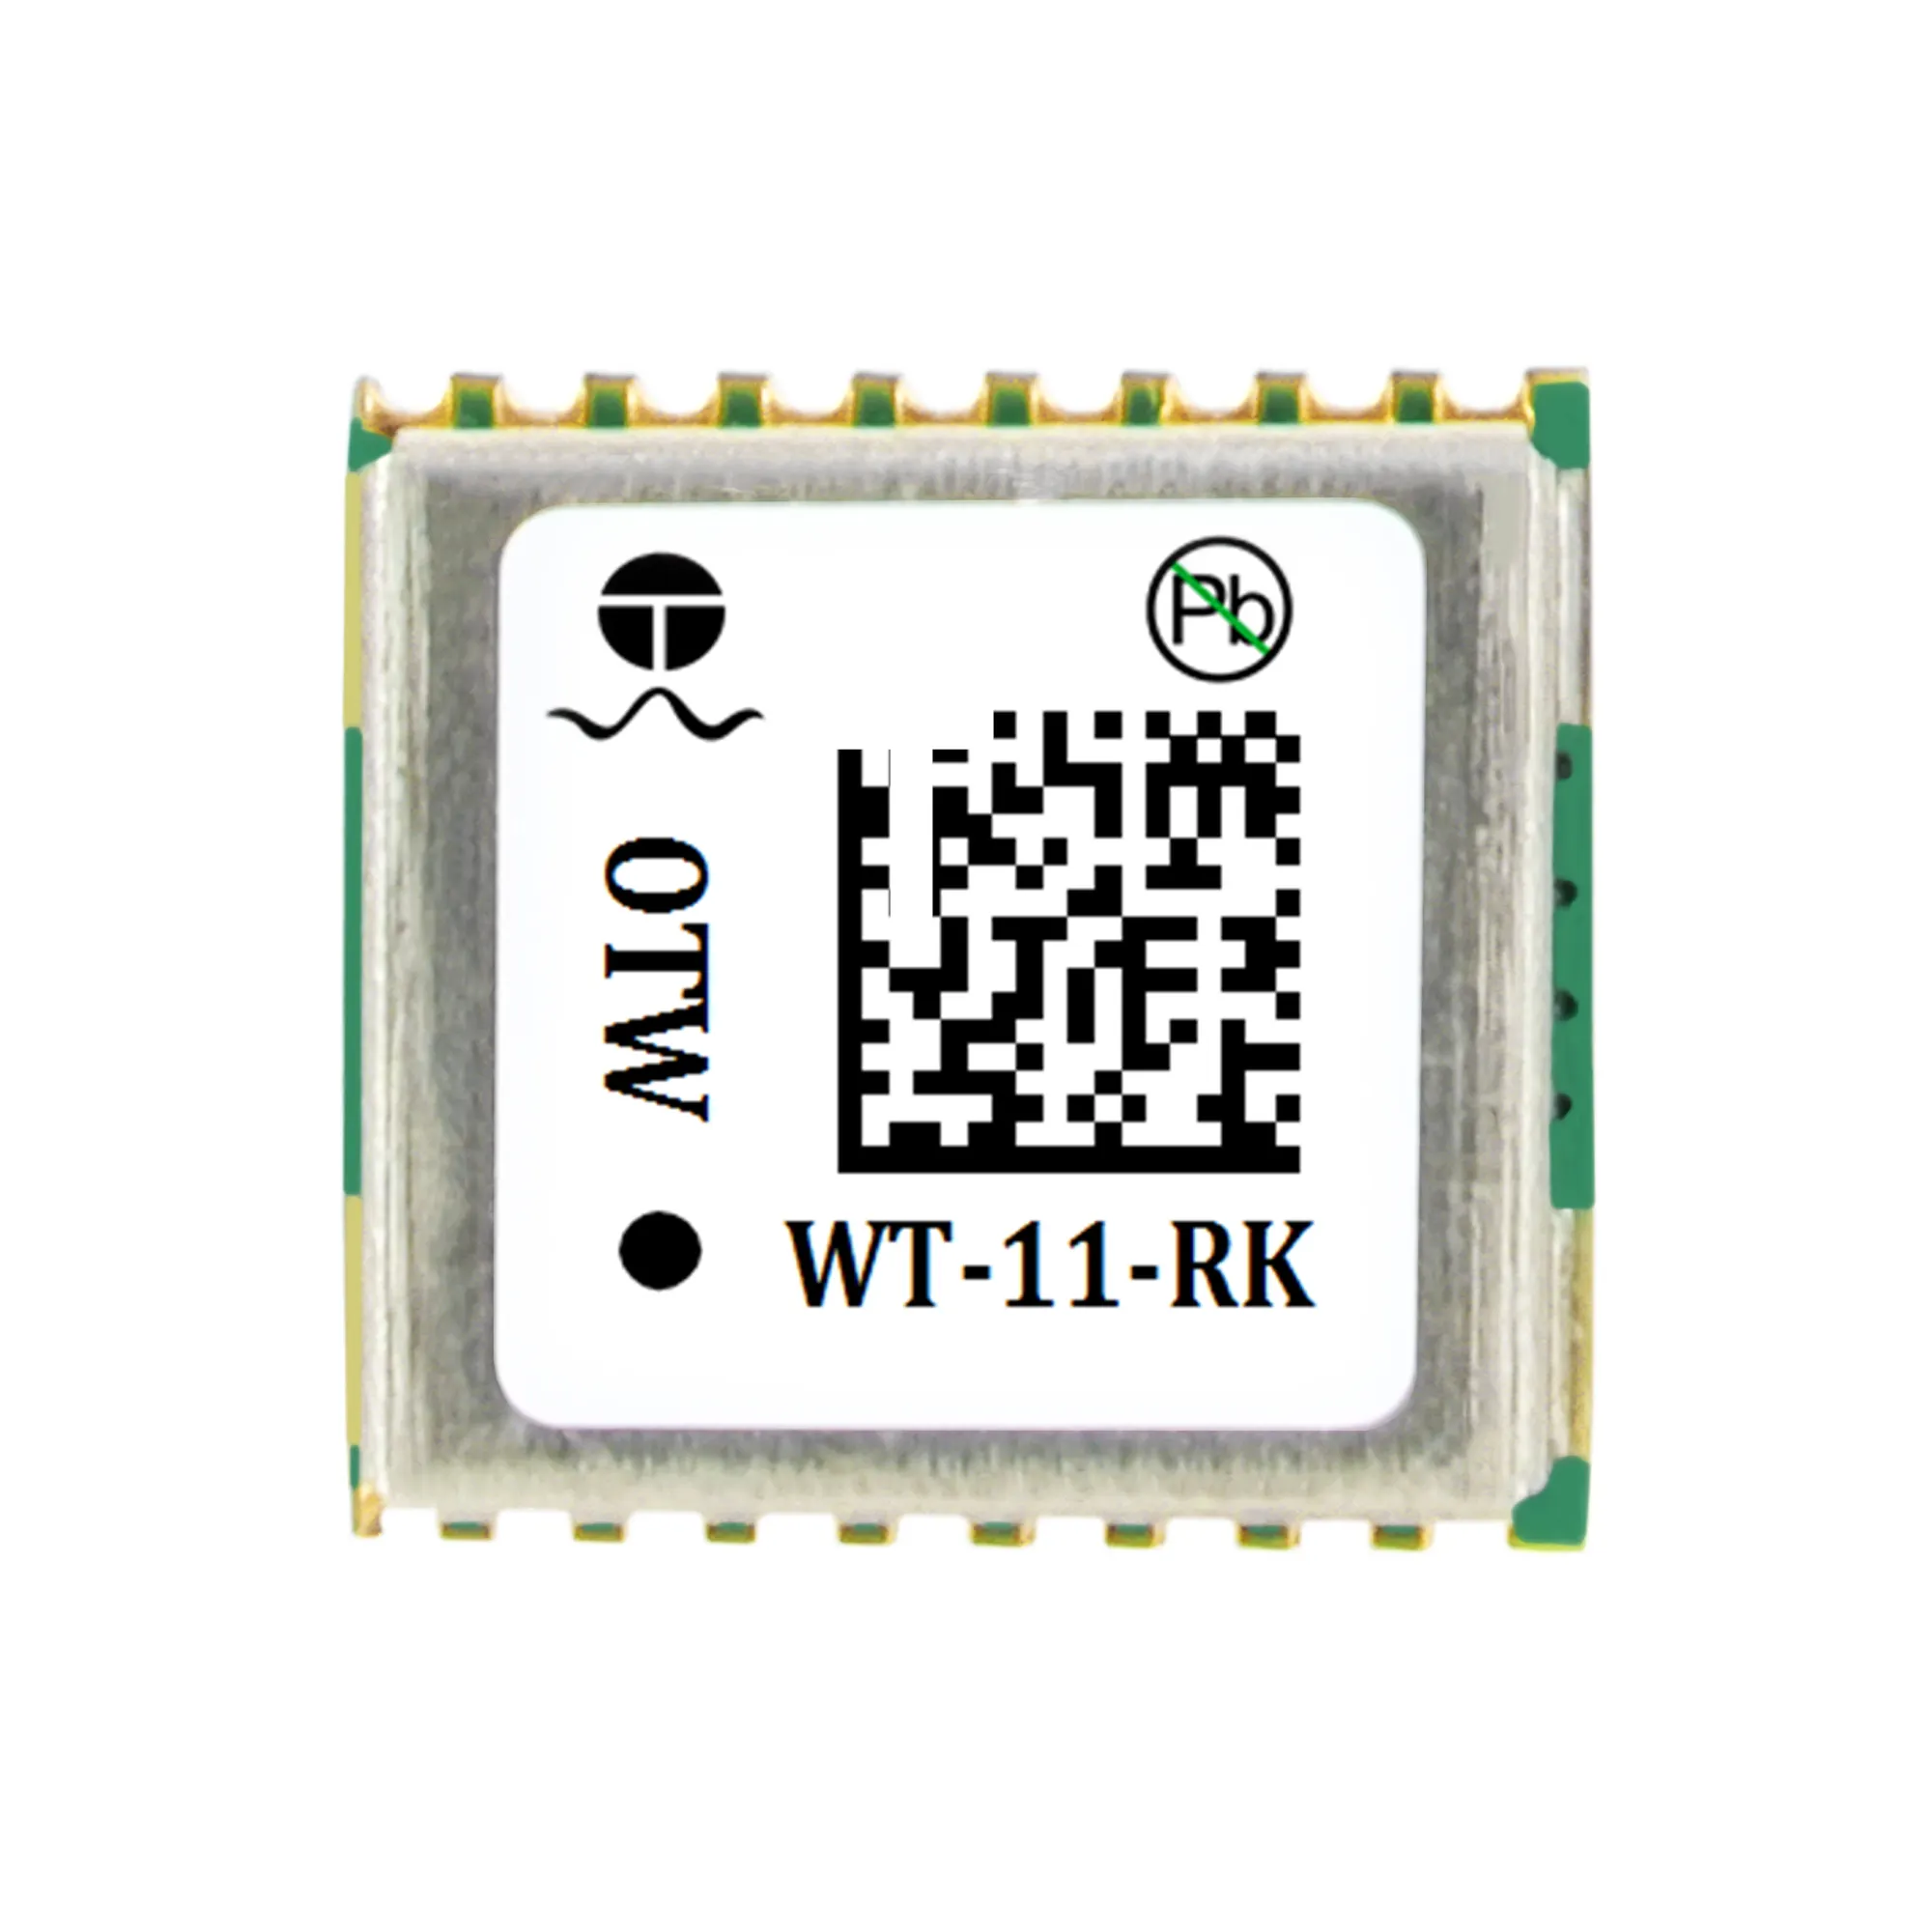 WT-11-RK โดรนโมดูลขนาดเล็กสําหรับการสํารวจที่ดินและการทําแผนที่การเก็บข้อมูลที่มีความแม่นยําสูง โมดูล rtk gps